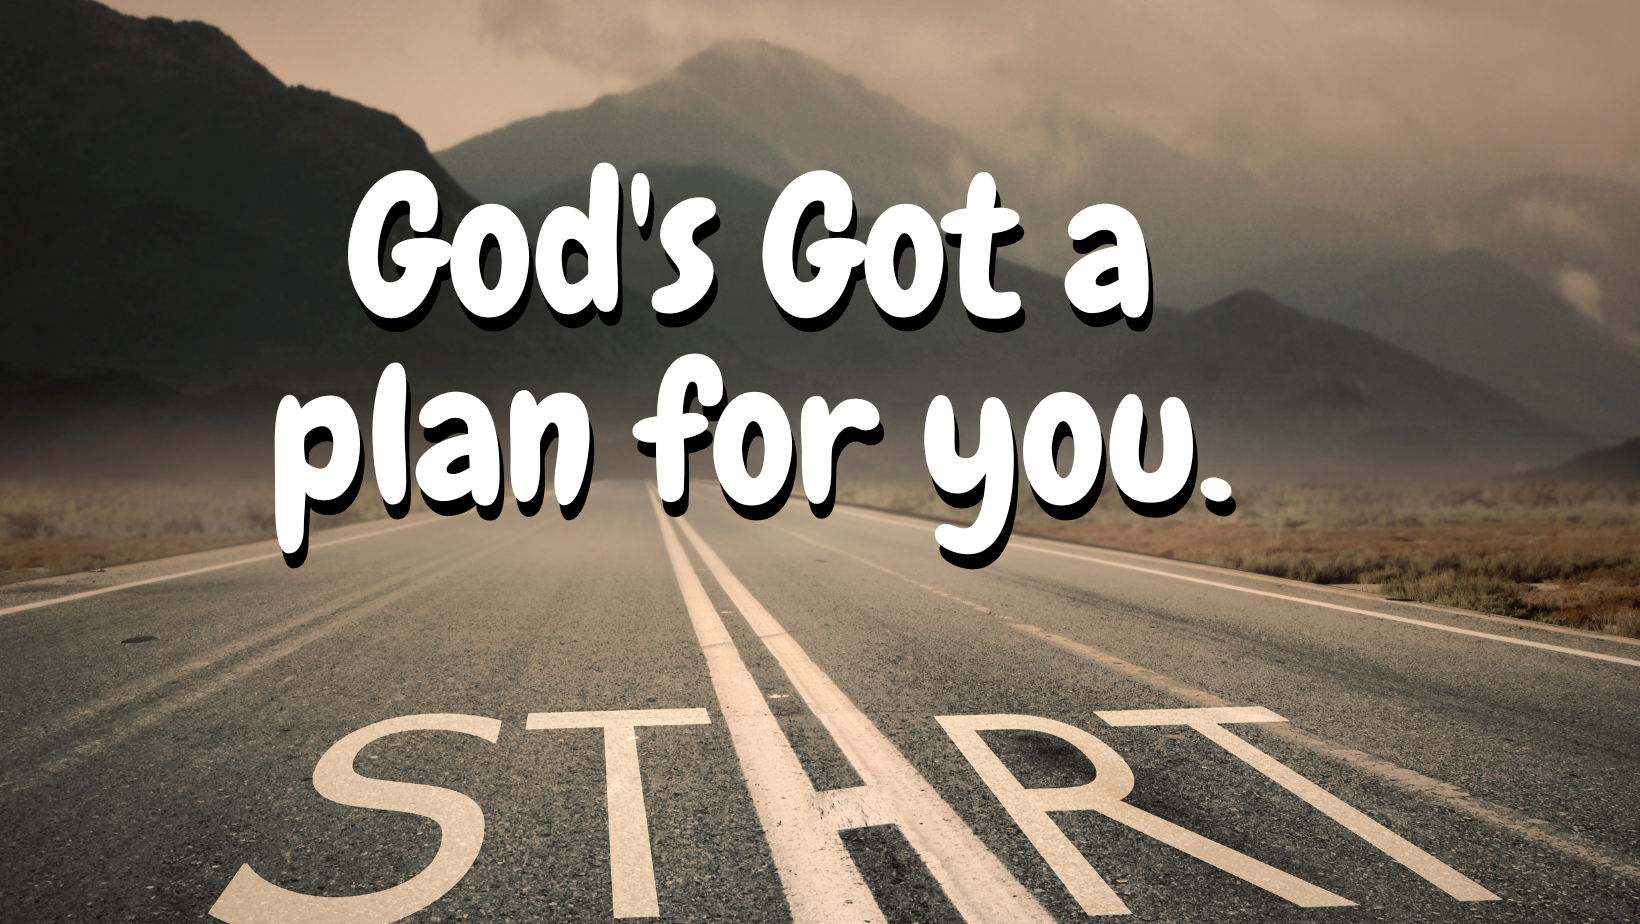 God's got plans for you